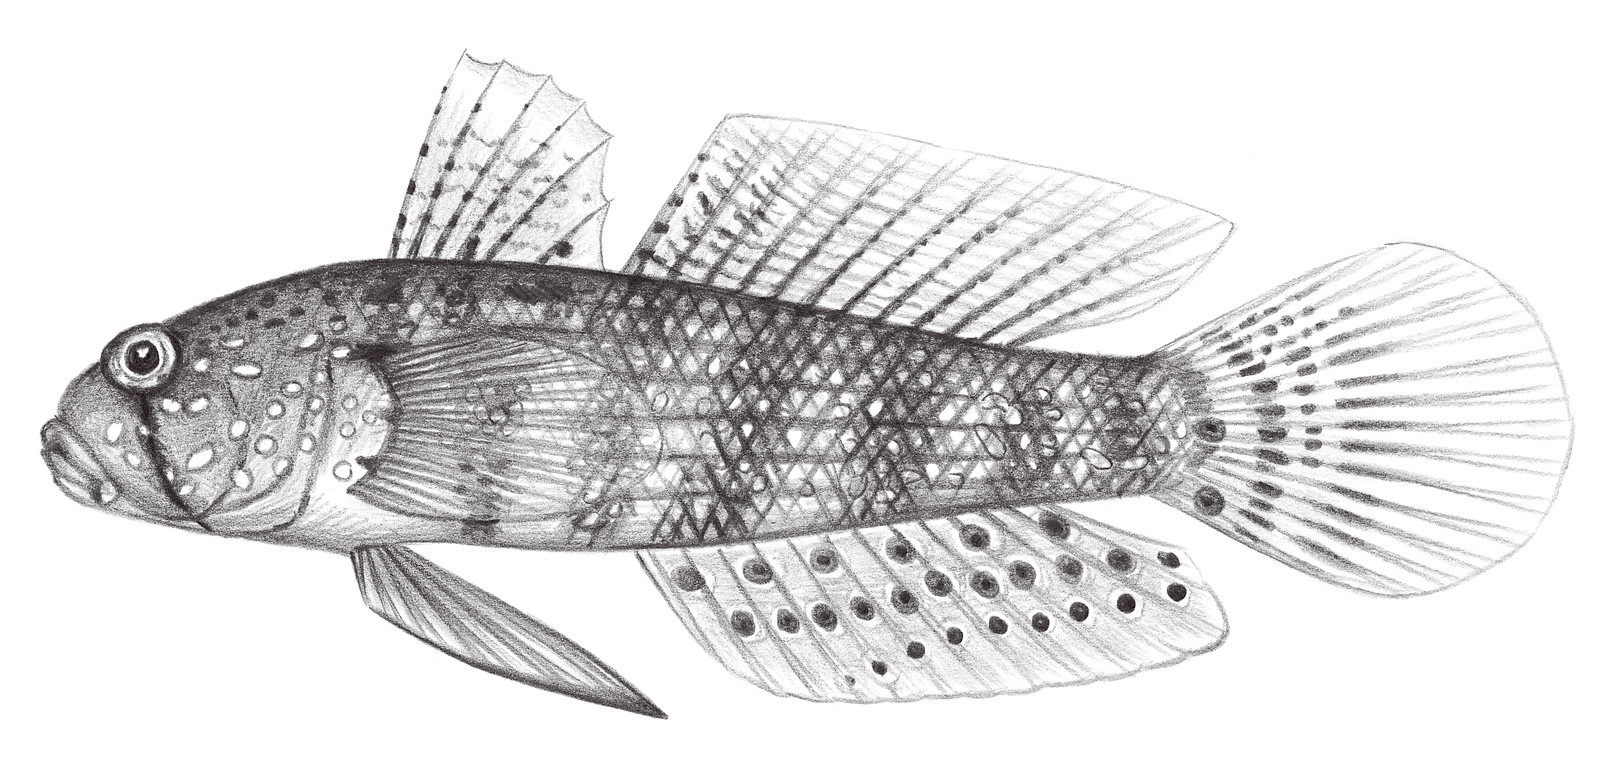 2218.	臀斑頜鱗鰕虎 Gnatholepis deltoides (Seale, 1901)